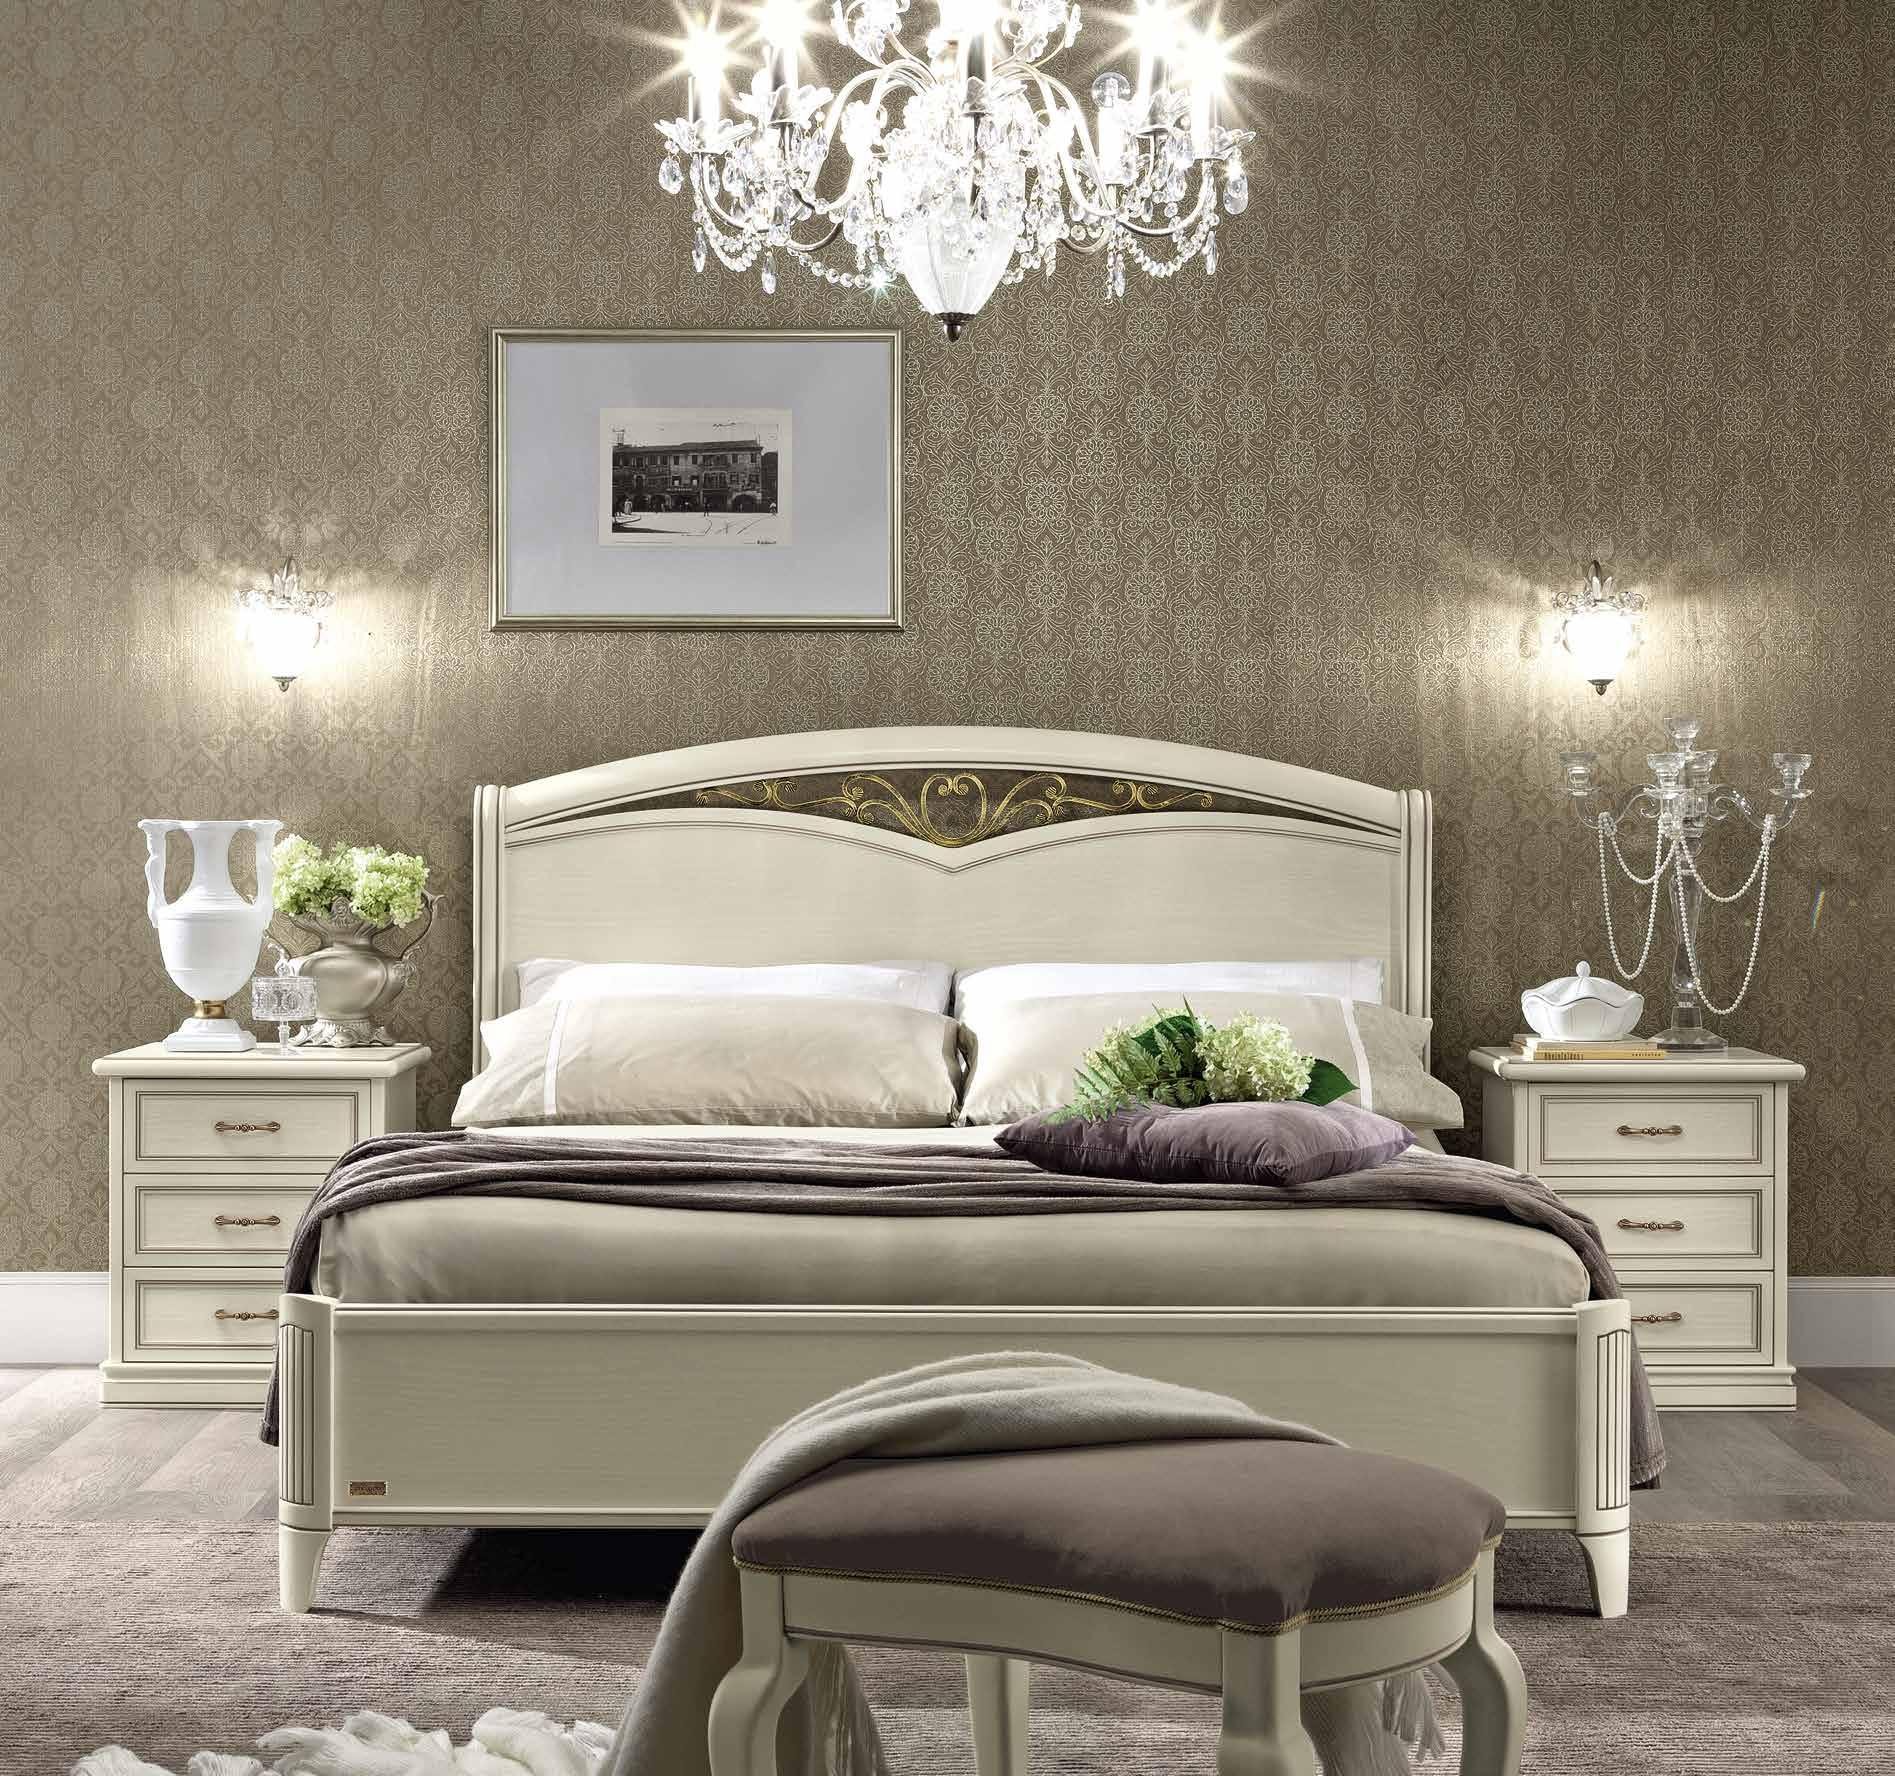 Кровать Nostalgia Bianco Antico, двуспальная, без изножья, цвет: белый антик, 160x200 см (085LET.11BA)085LET.11BA